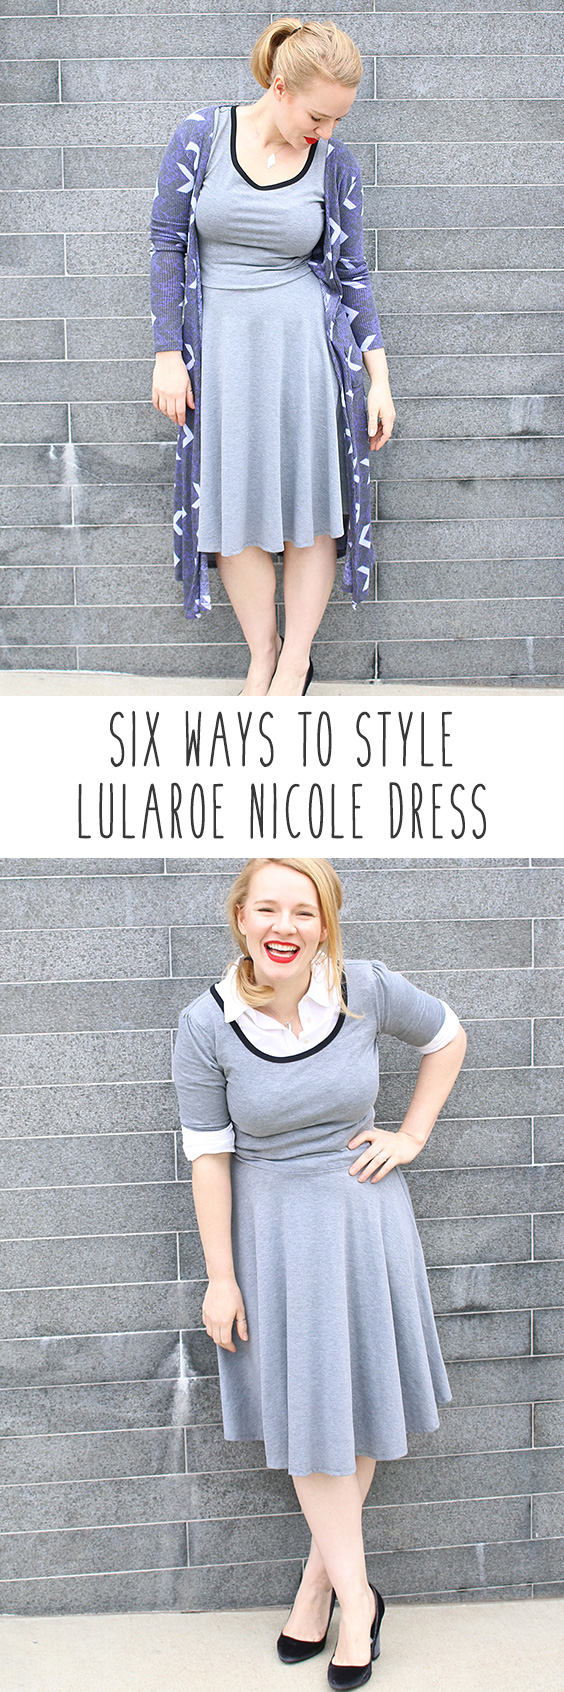 Nicole Dress Example {plus size}  Plus size fashion tips, Lularoe